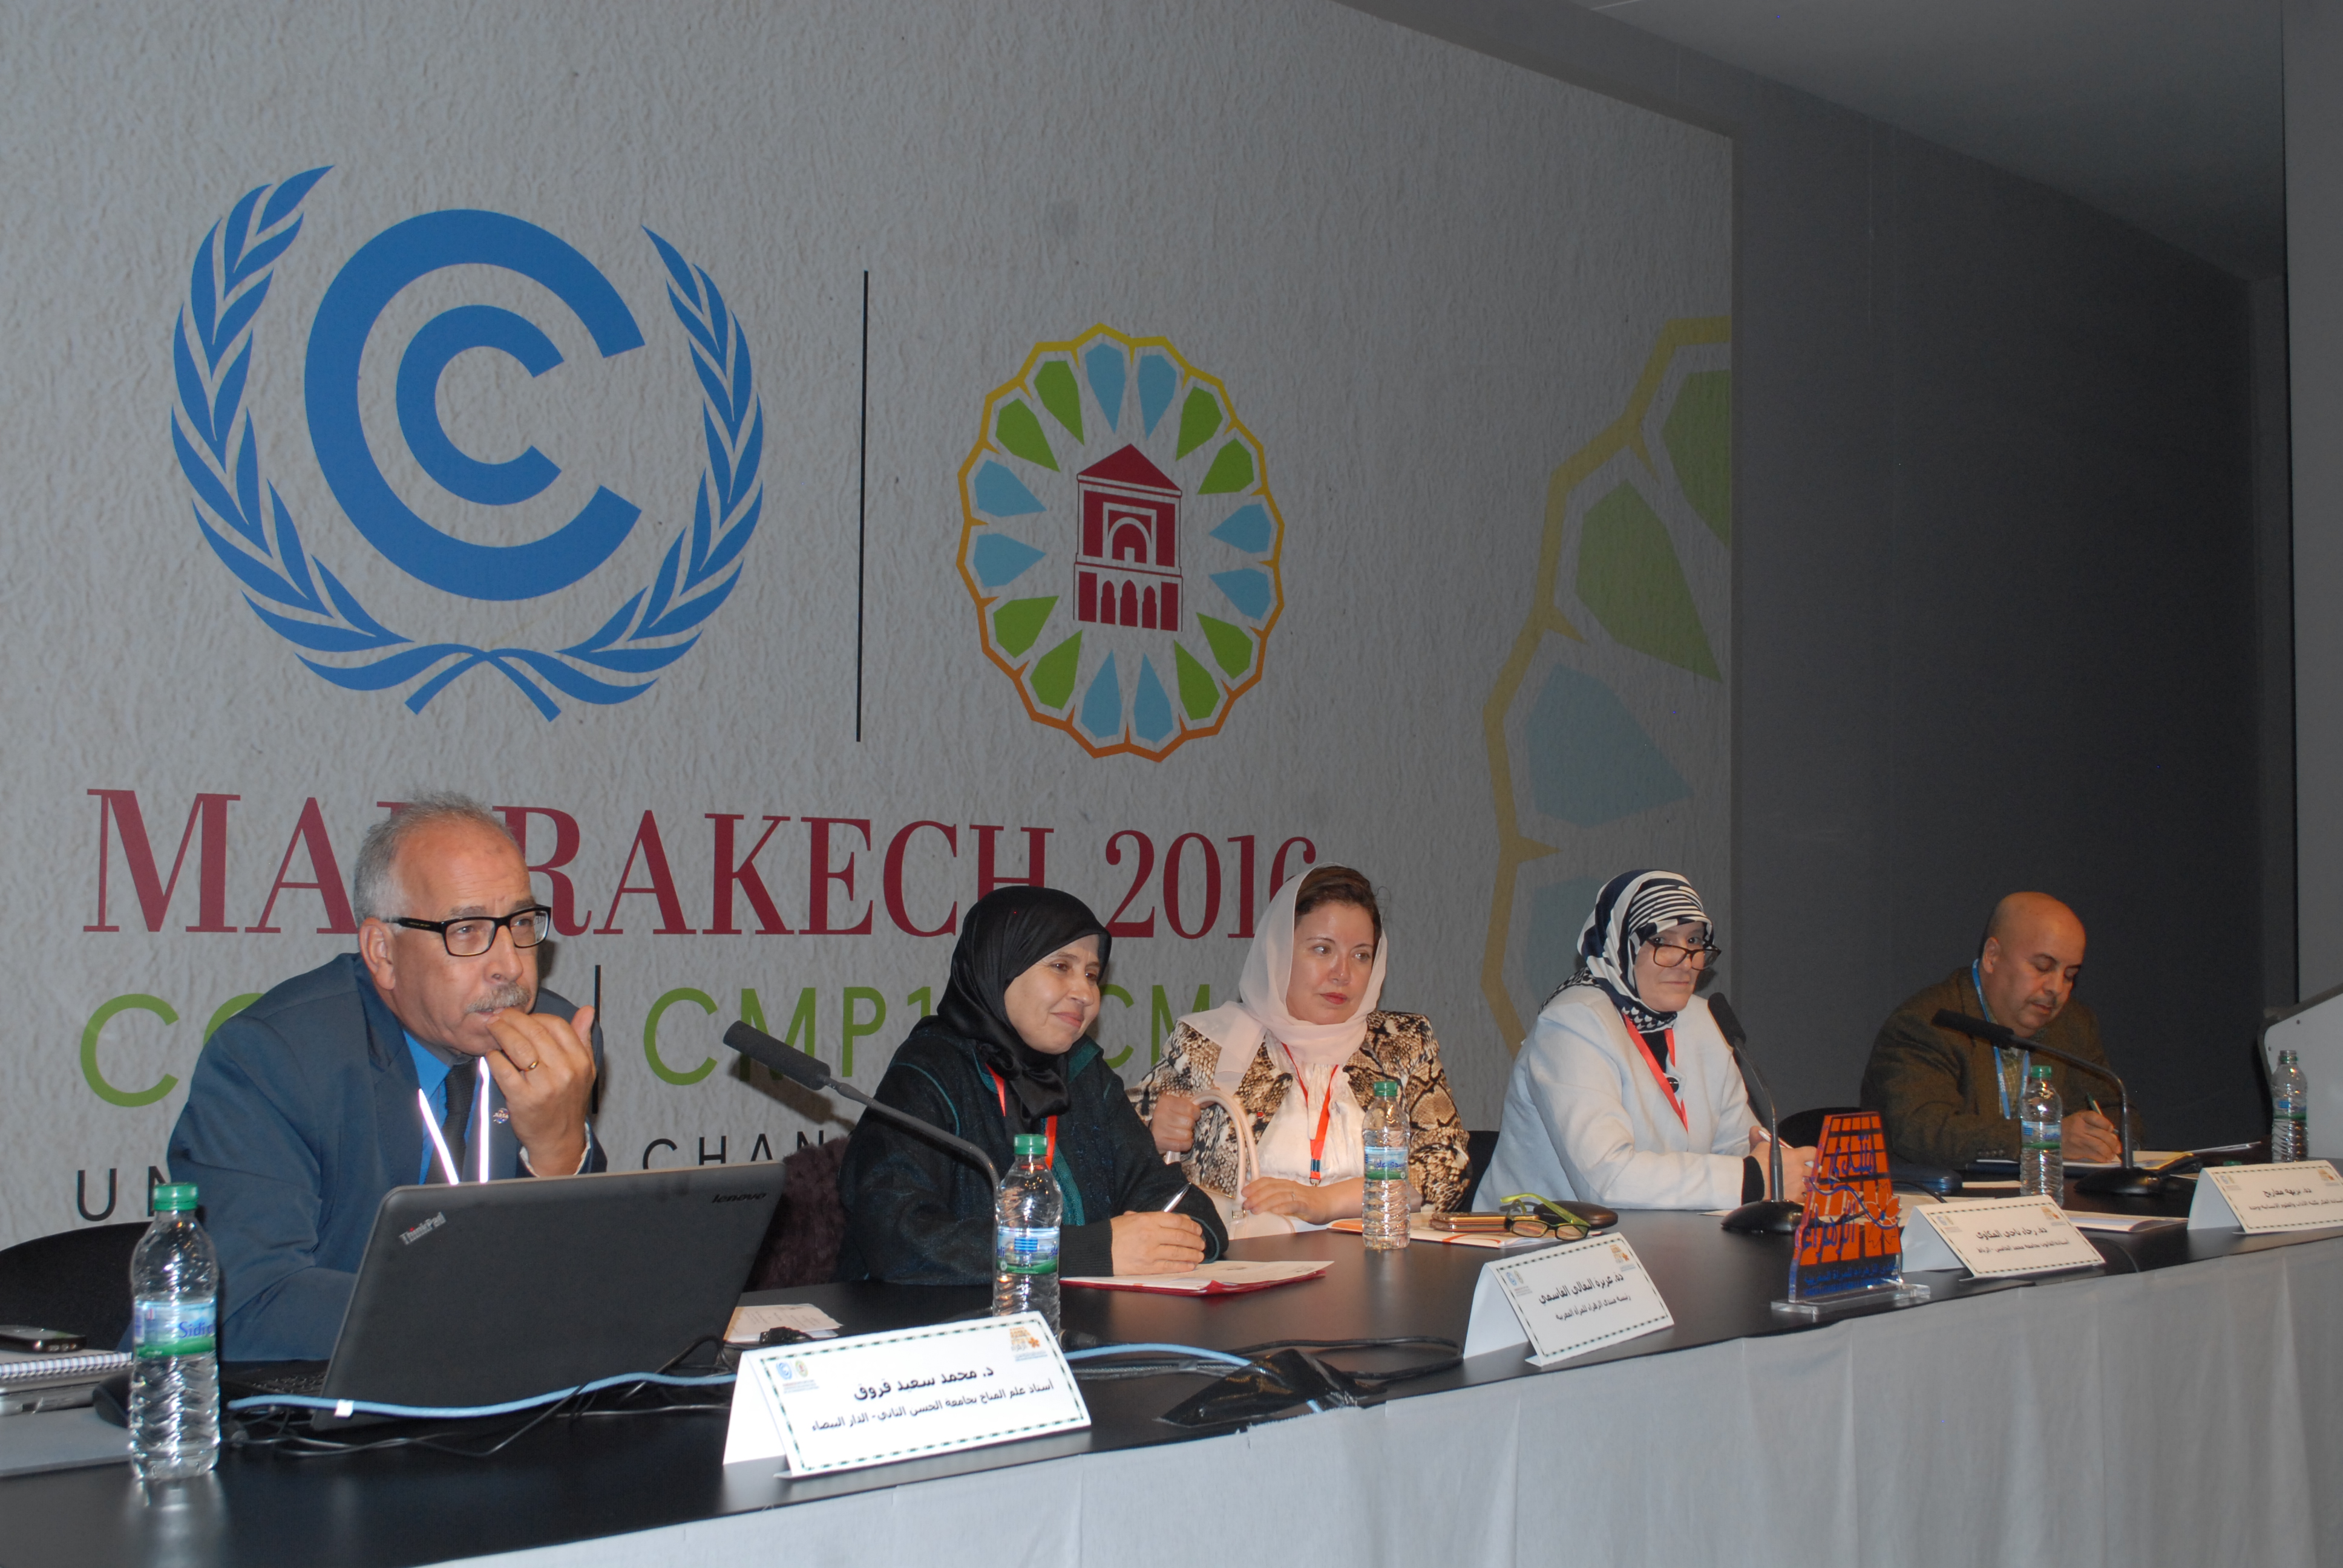 جانب من الحضور في ندوة الأسرة والتنشئة على حقوق الإنسان البيئية التي نظمها منتدى الزهراء بقمة المناخ 